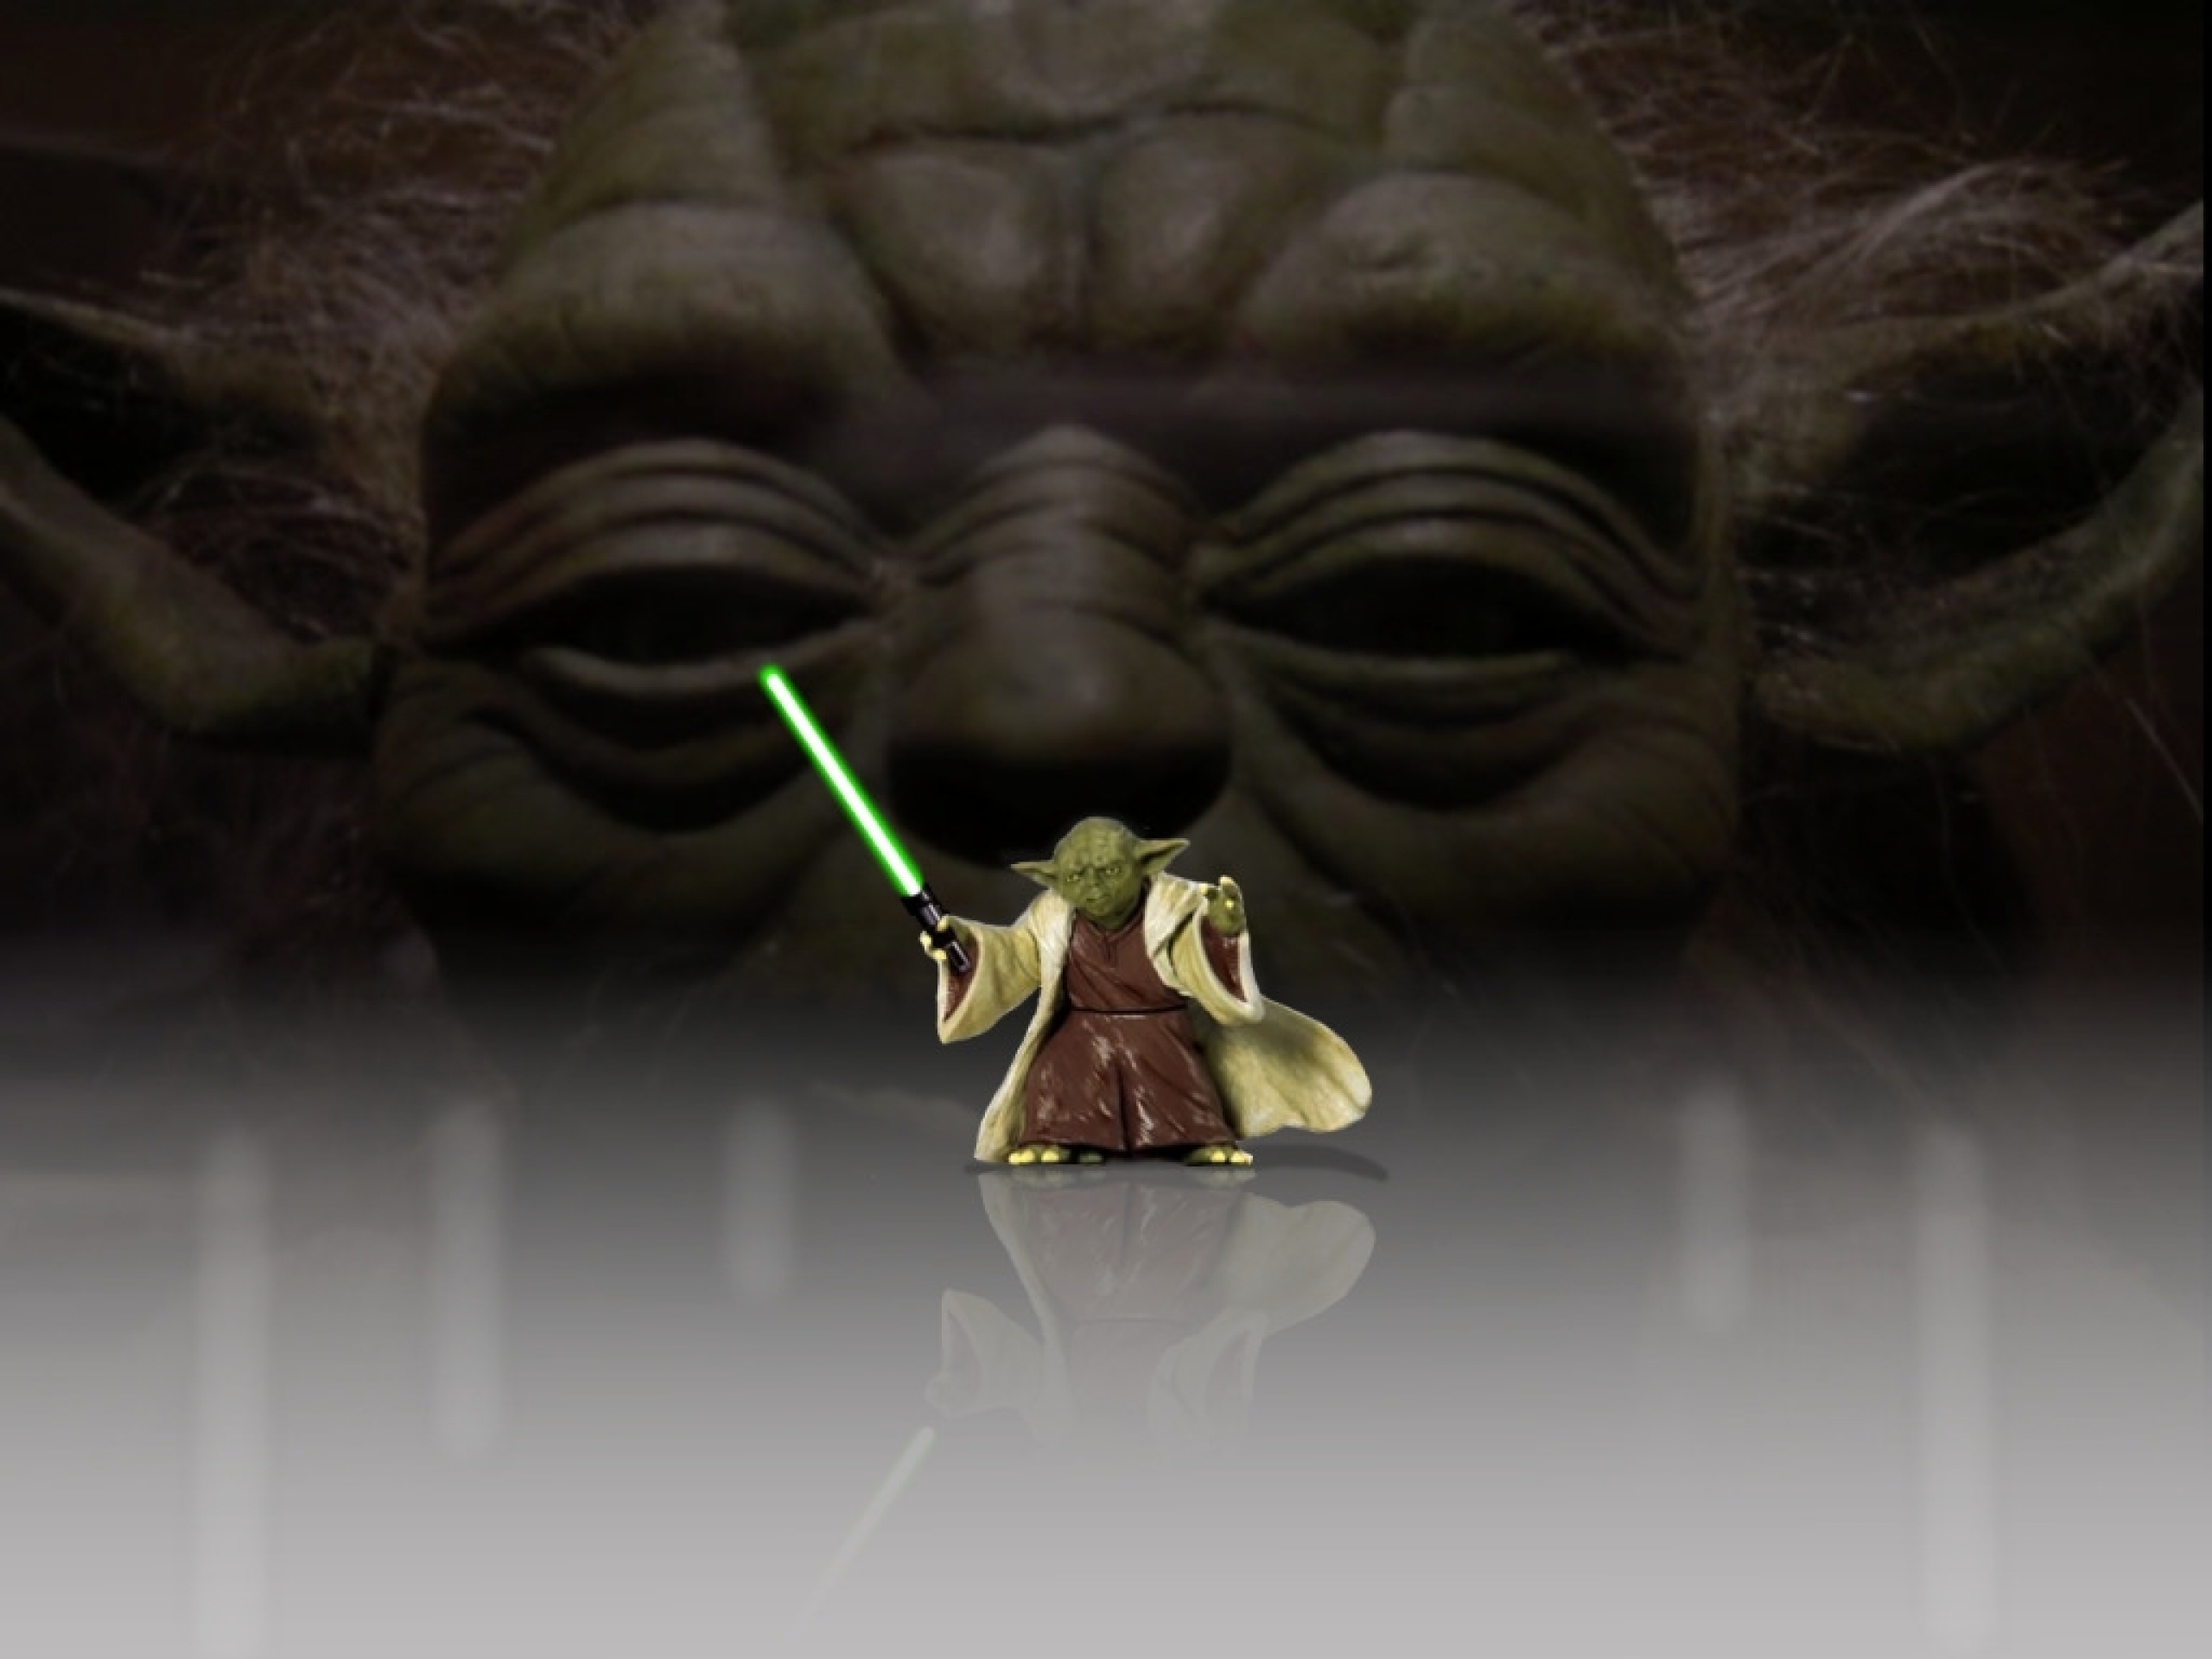  Star Wars Vader Star Wars Yoda Wallpaper Free Wallpapers Download